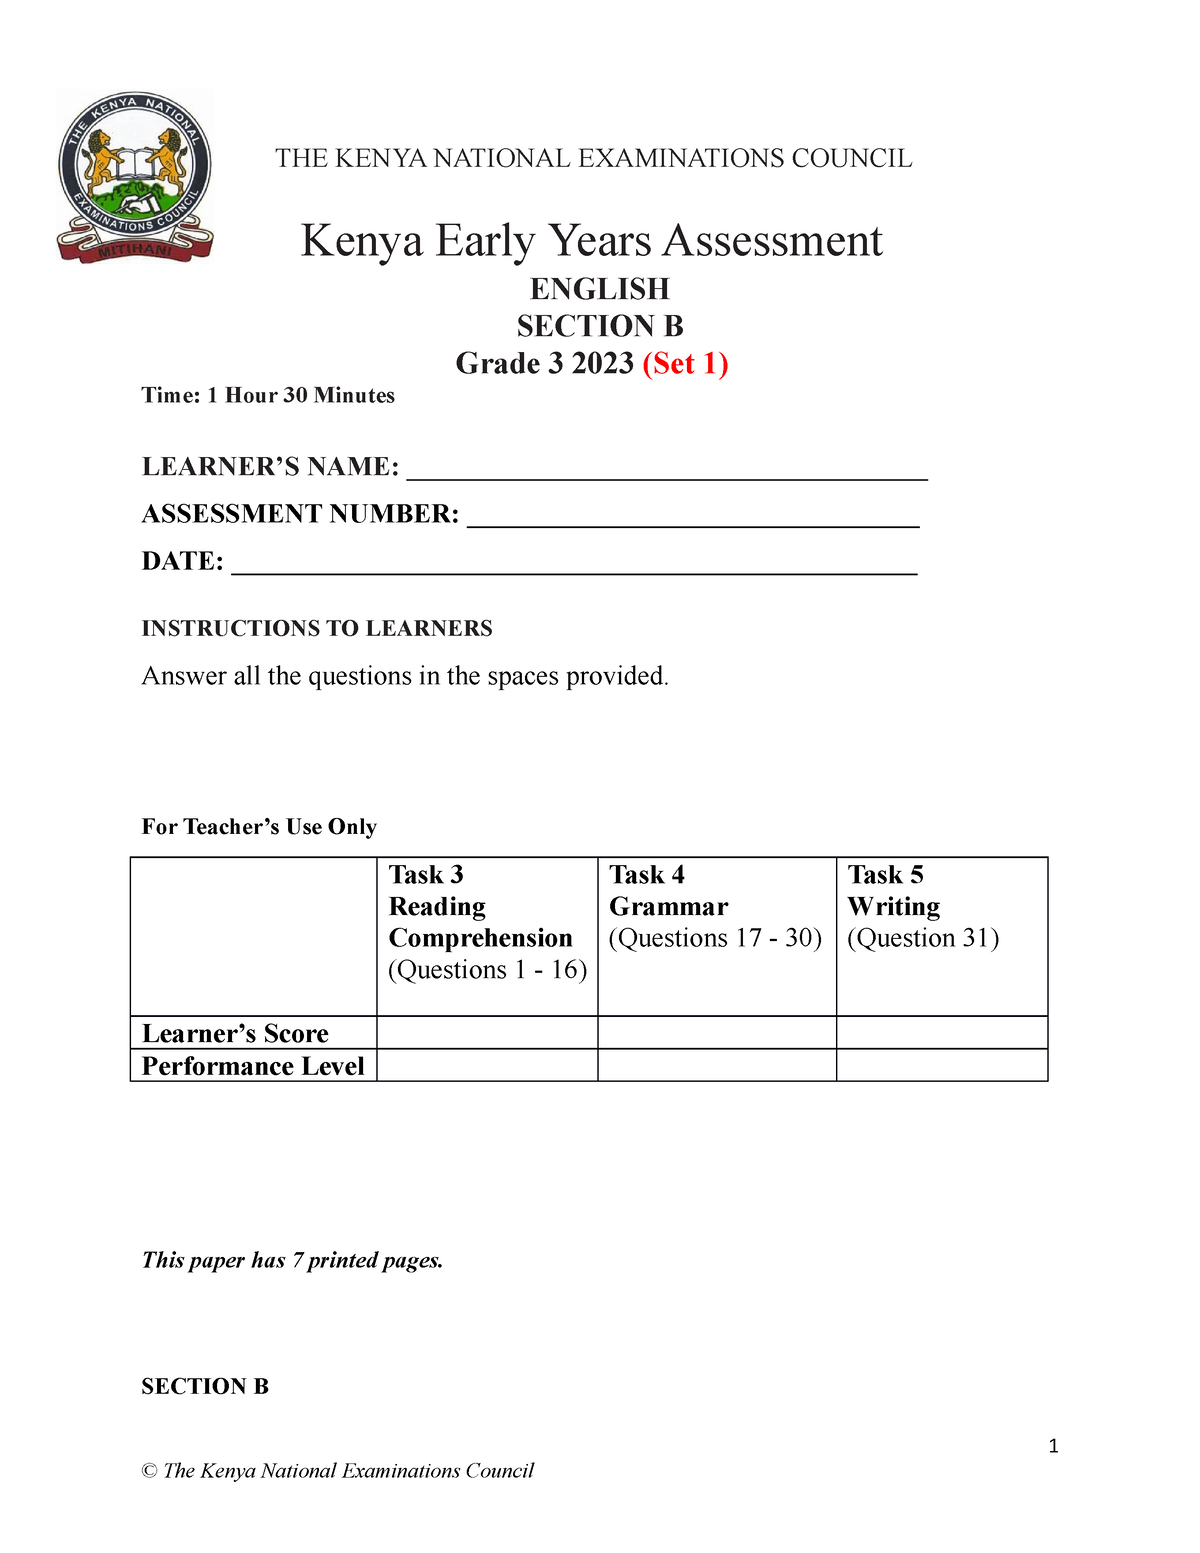 Set 1 Grade 3 Sba Section B The Kenya National Examinations Council Kenya Early Years 5003